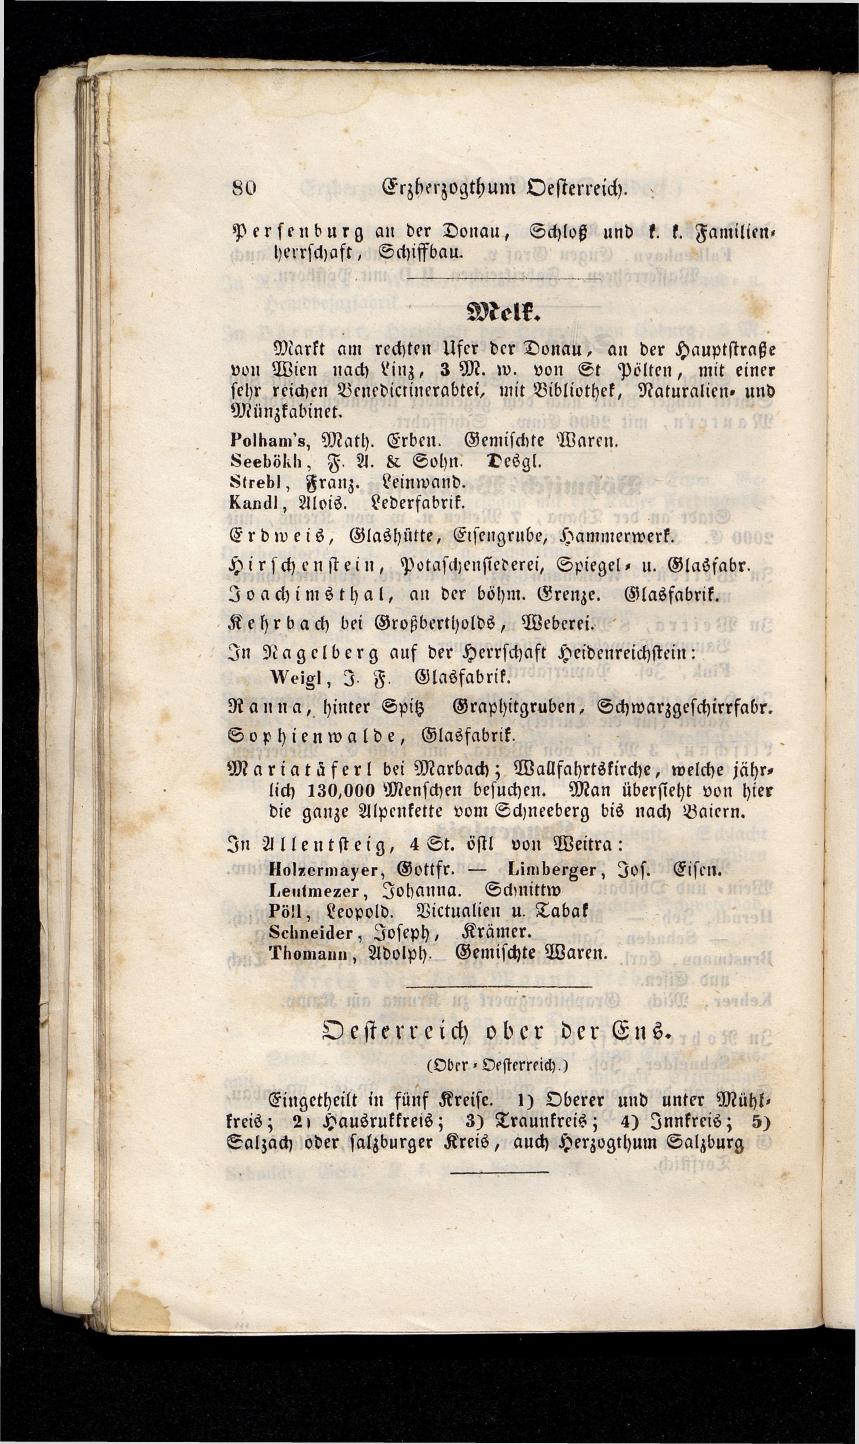 Grosses Adressbuch der Kaufleute. No. 13. Oesterreich ober u. unter der Enns 1844 - Seite 84